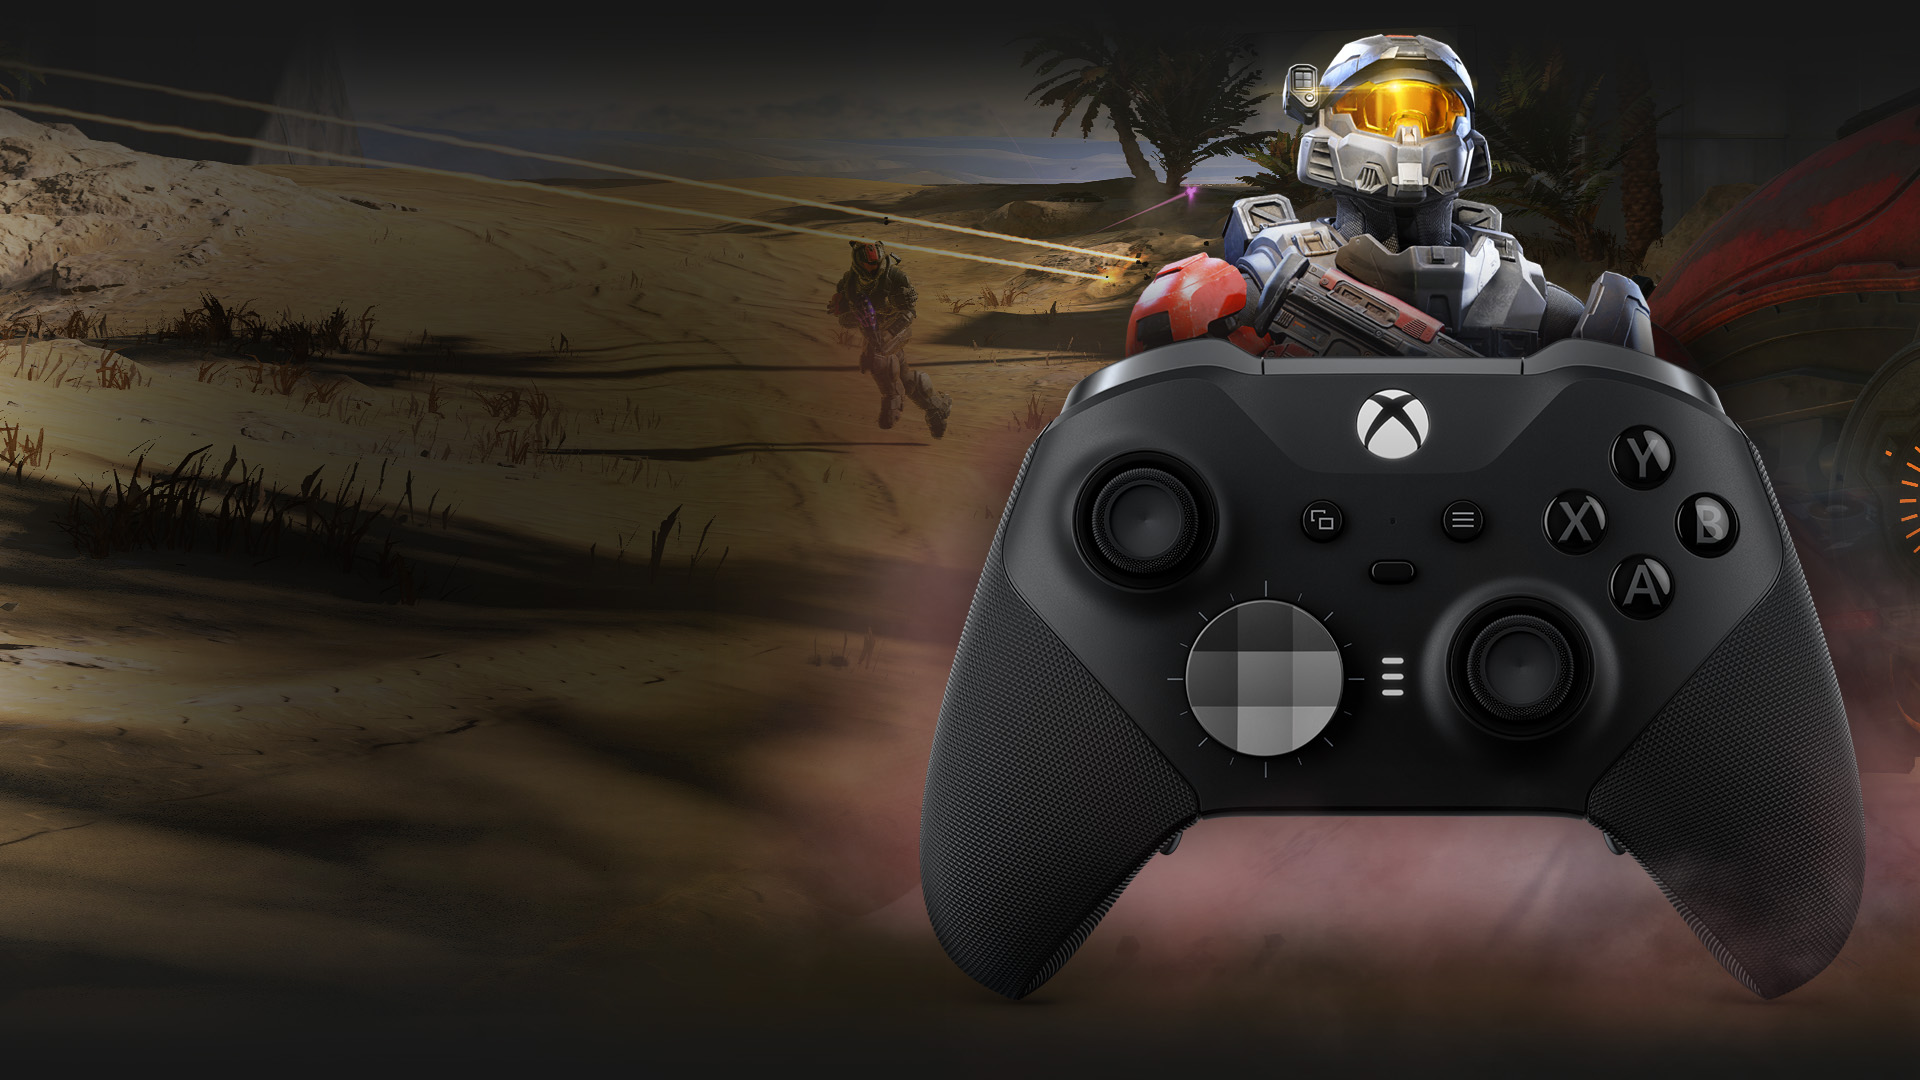 En flerspiller-Spartan står bak Trådløs Xbox Elite-kontroller Series 2. To team med Spartans sloss mot hverandre med et ørkenmiljø i bakgrunnen.